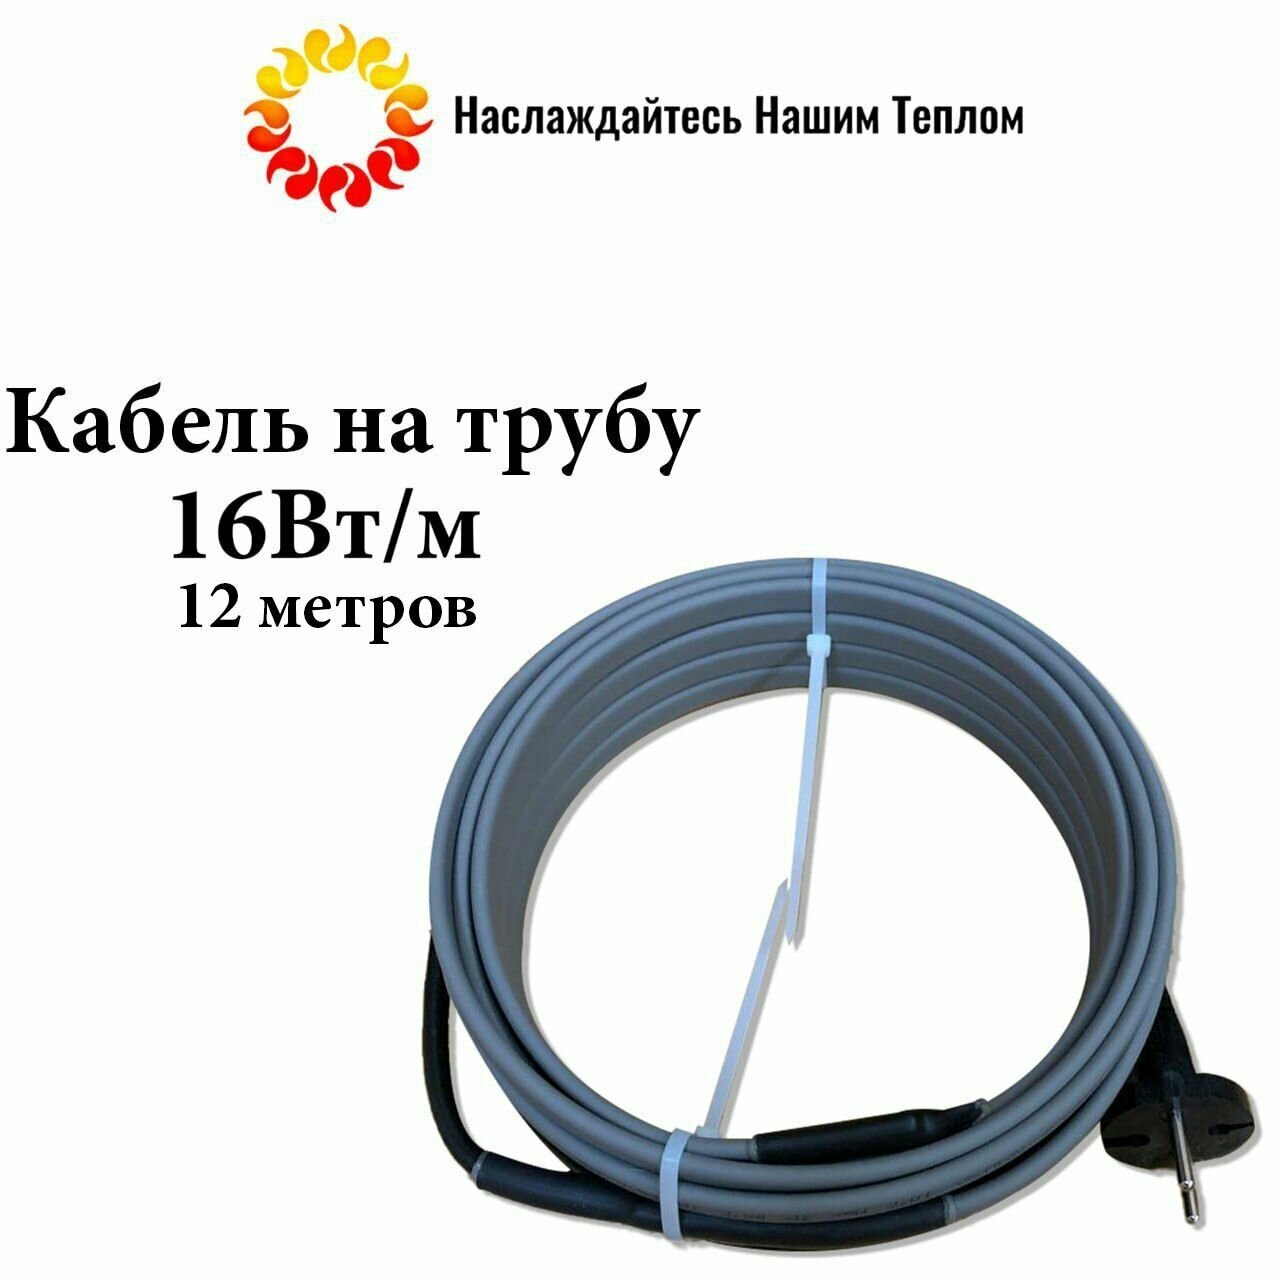 Саморегулирующийся греющий кабель на трубу (наружный) для водопровода и канализации 16 Вт/м длина 12 метров